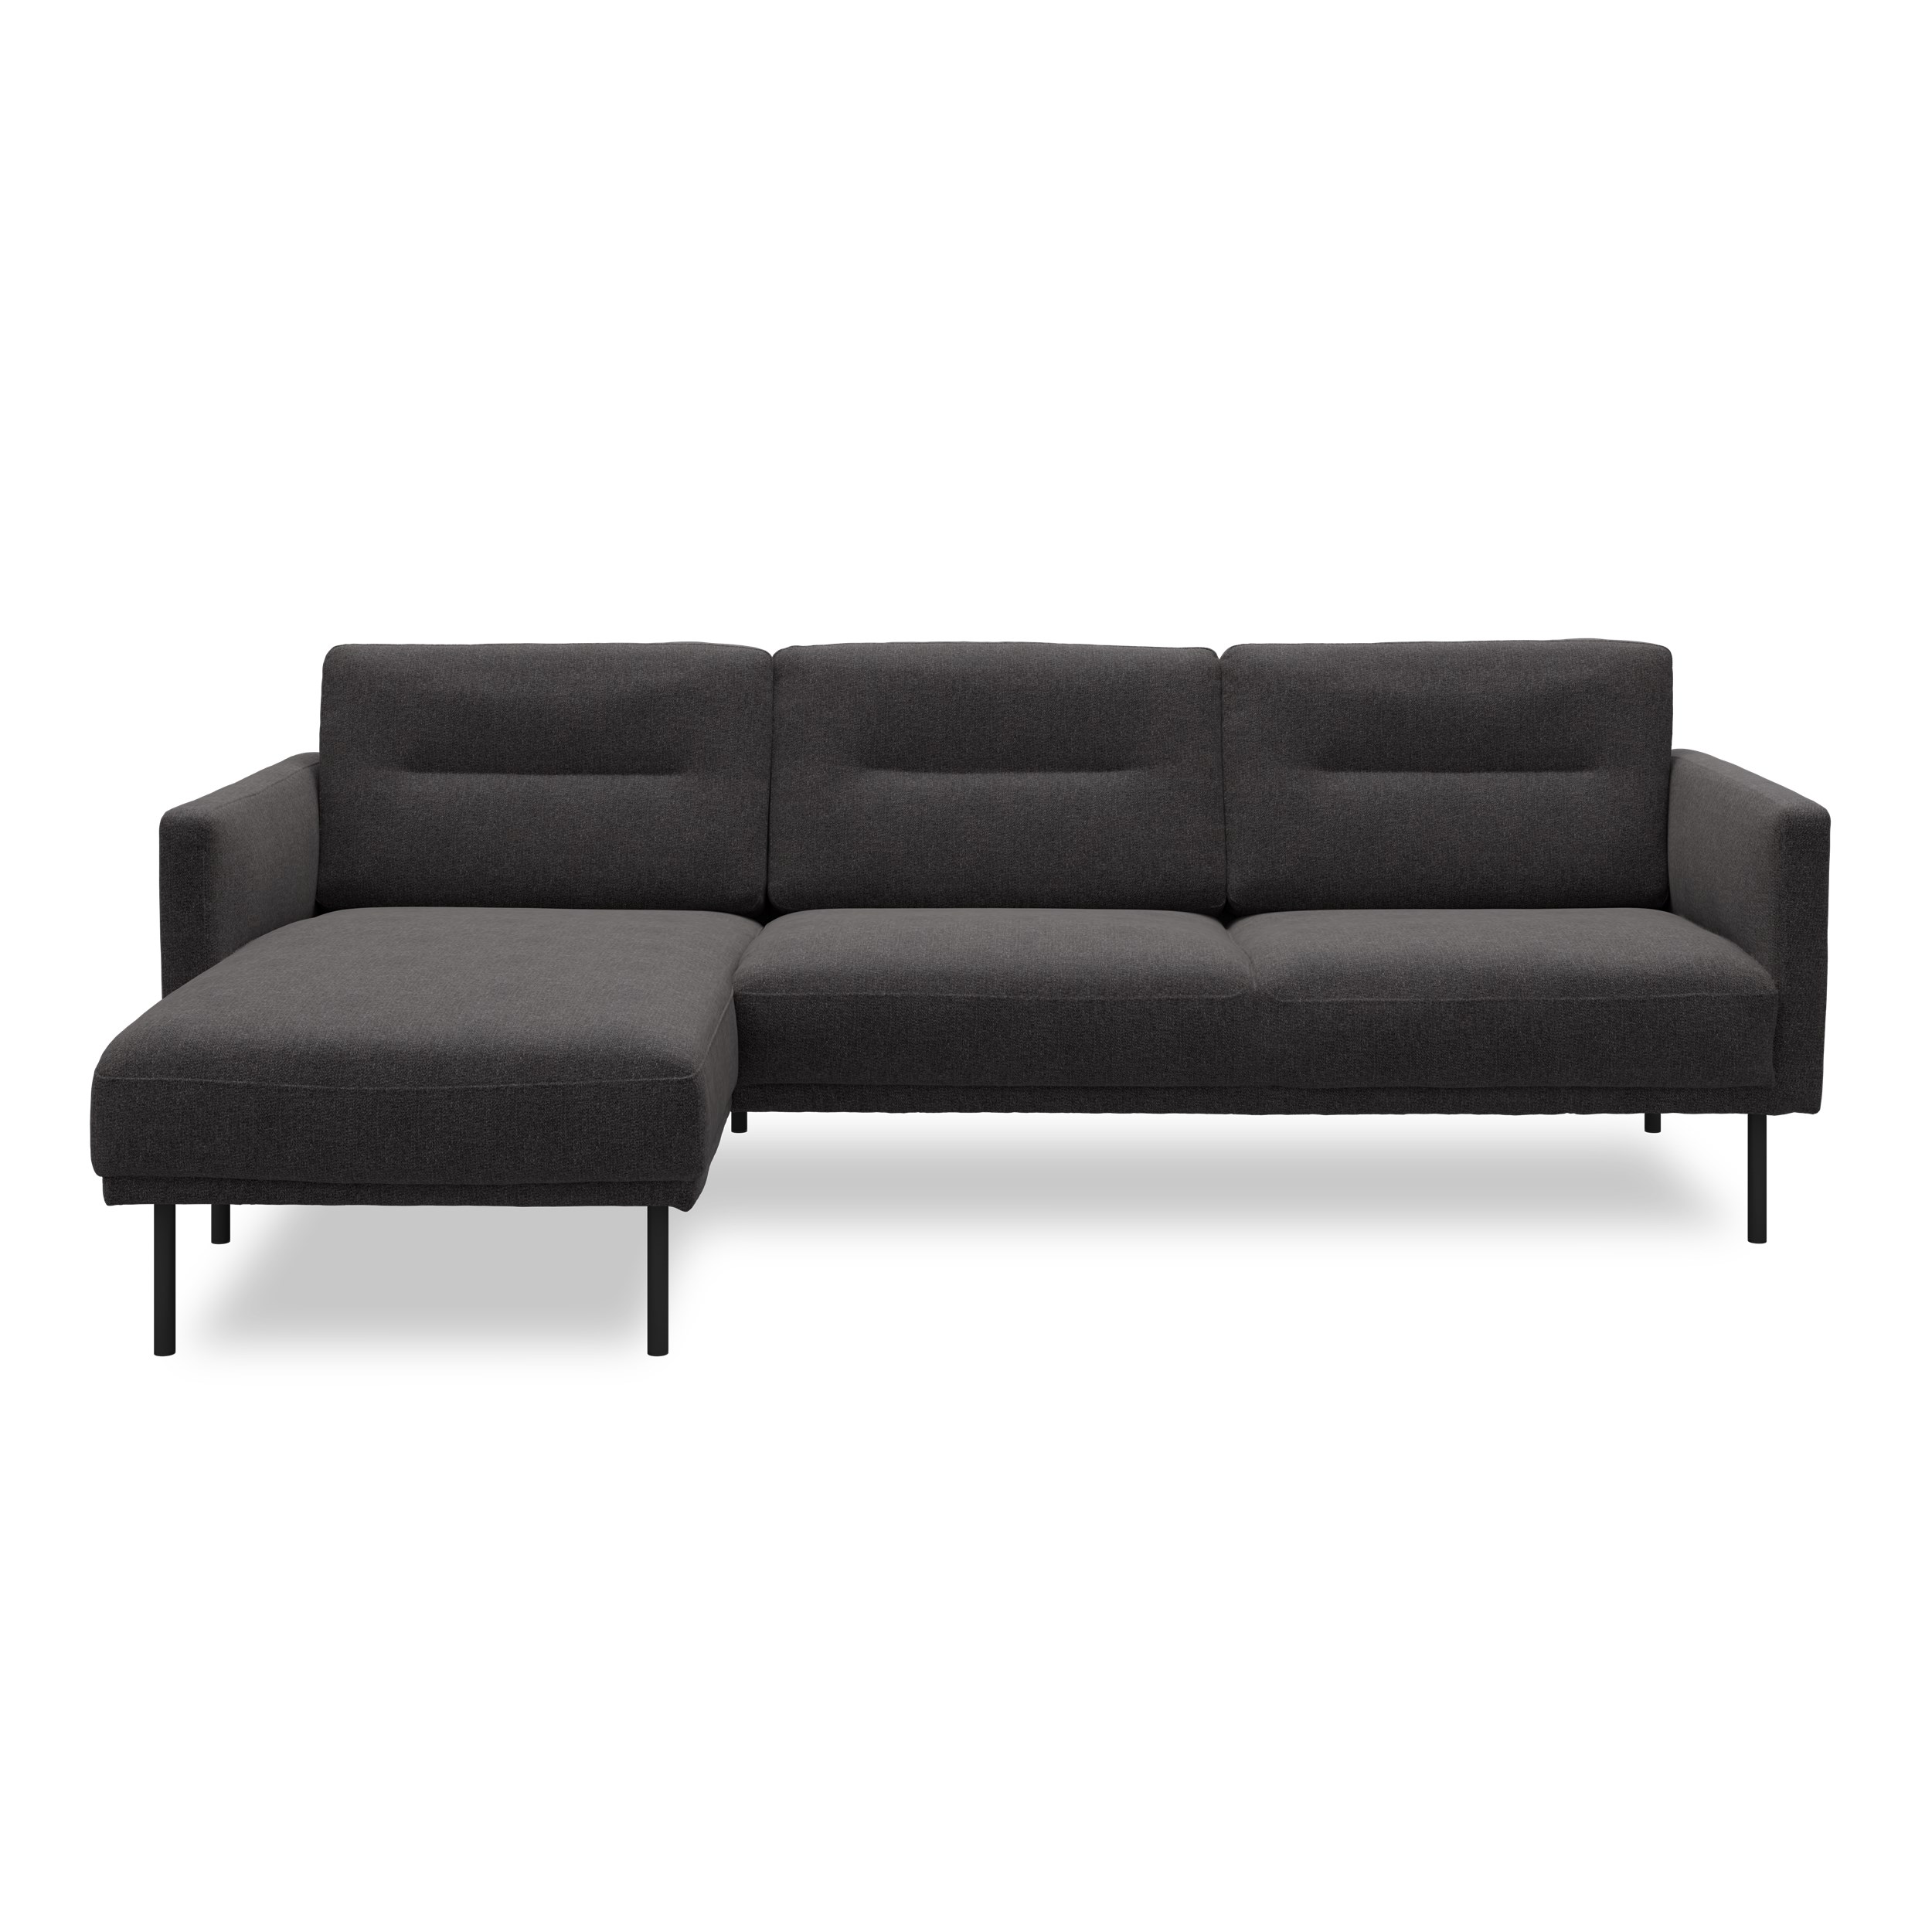 Larvik Sofa med chaiselong - Hampton 370 Antracite stof og ben i sortlakeret metal